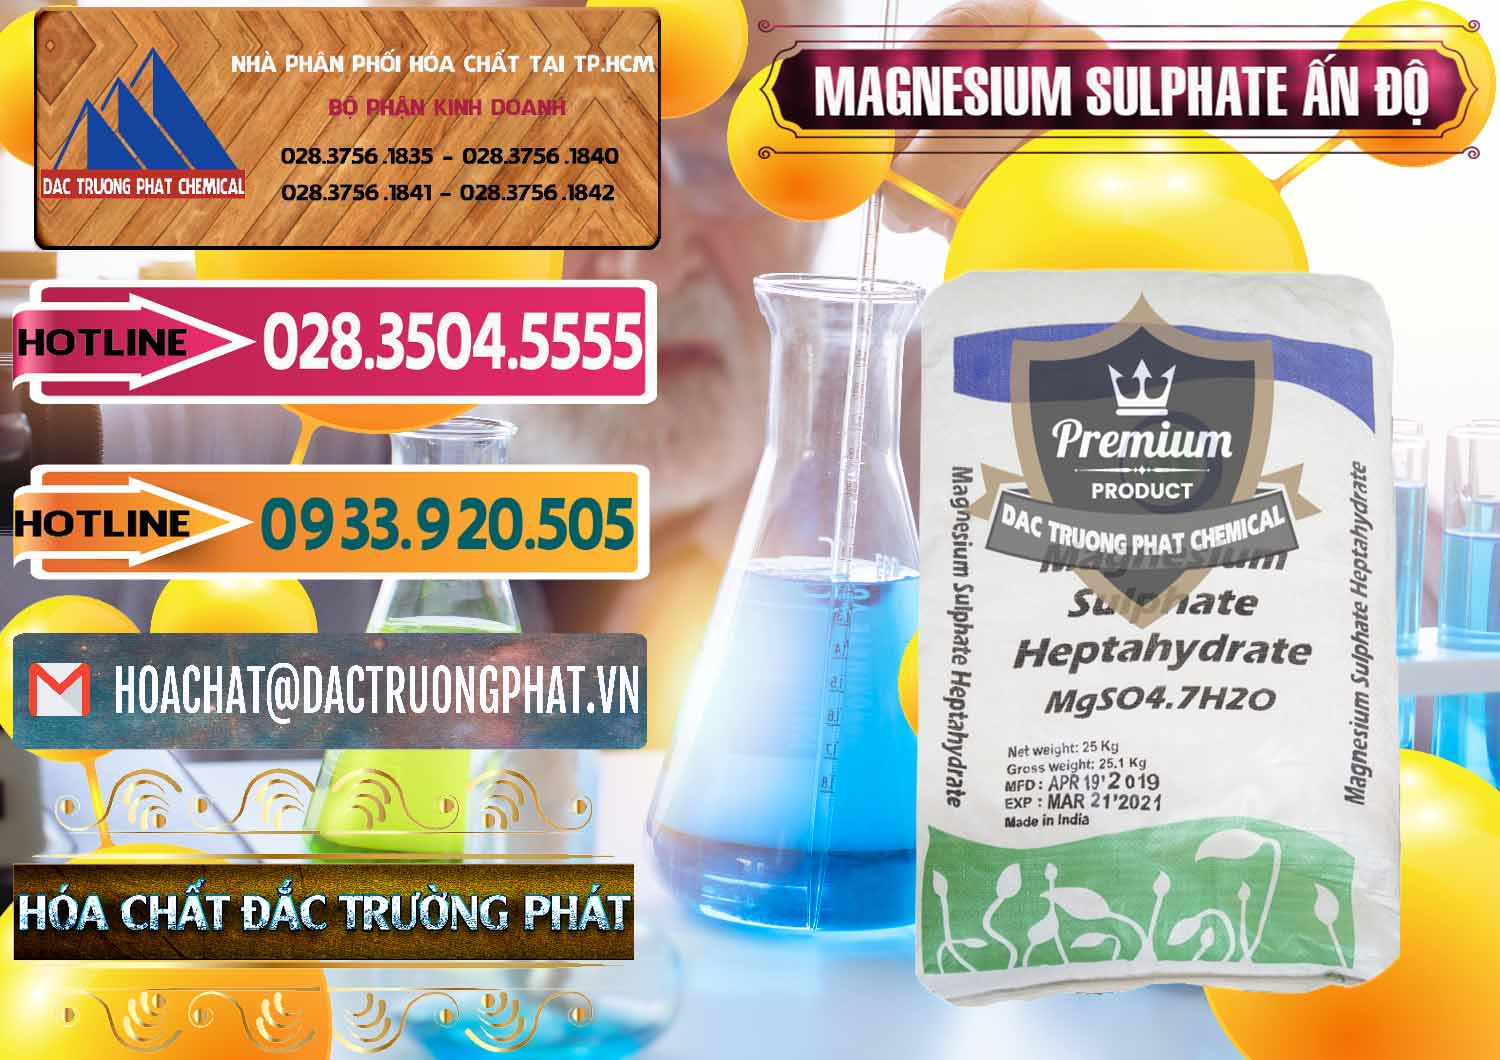 Cty chuyên bán _ phân phối MGSO4.7H2O – Magnesium Sulphate Heptahydrate Ấn Độ India - 0362 - Công ty phân phối - cung cấp hóa chất tại TP.HCM - dactruongphat.vn